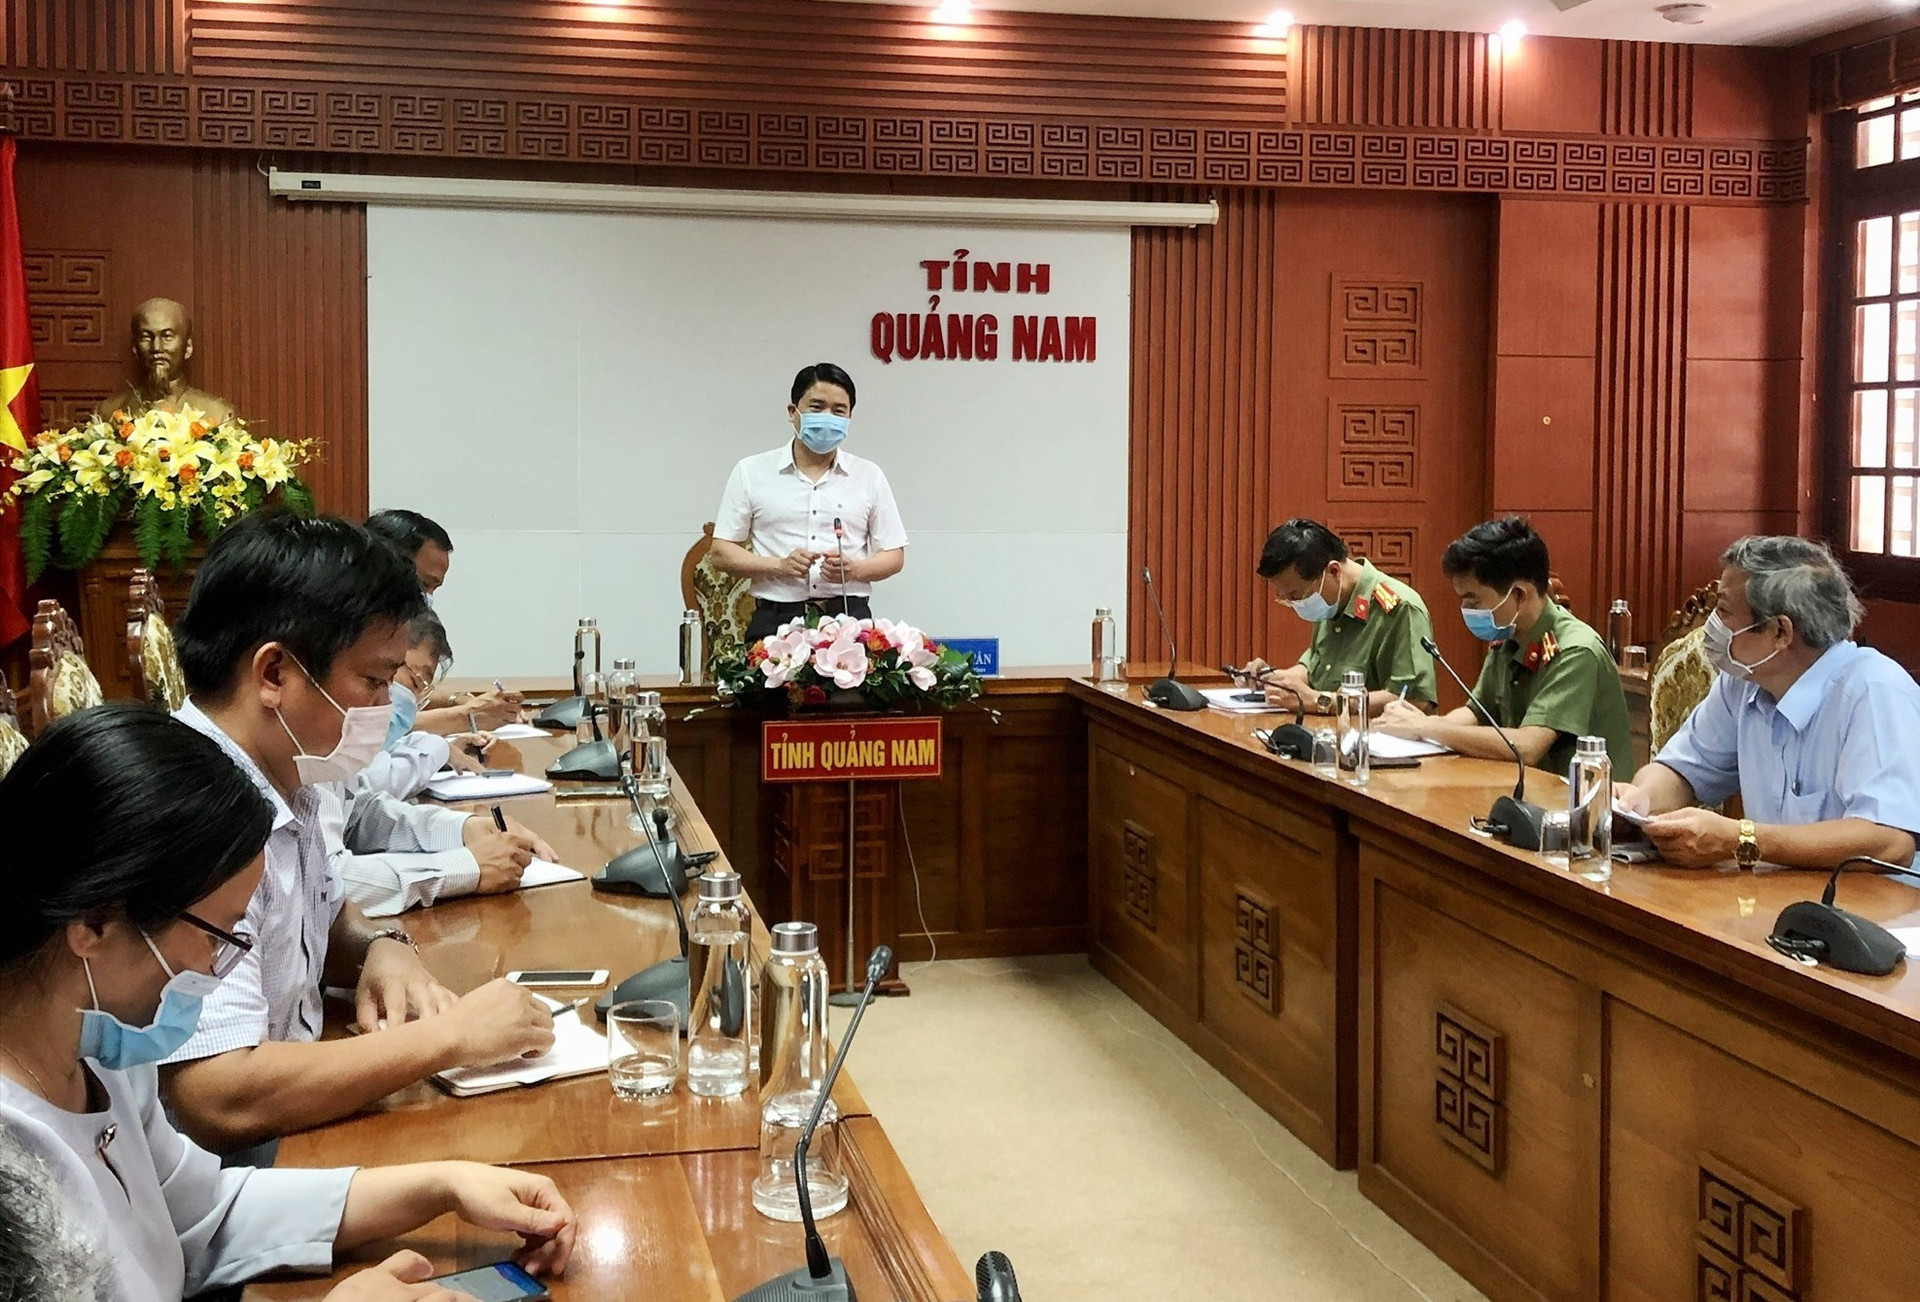 Phó Chủ tịch UBND tỉnh Trần Văn Tân chủ trì buổi làm việc. Ảnh: X.H